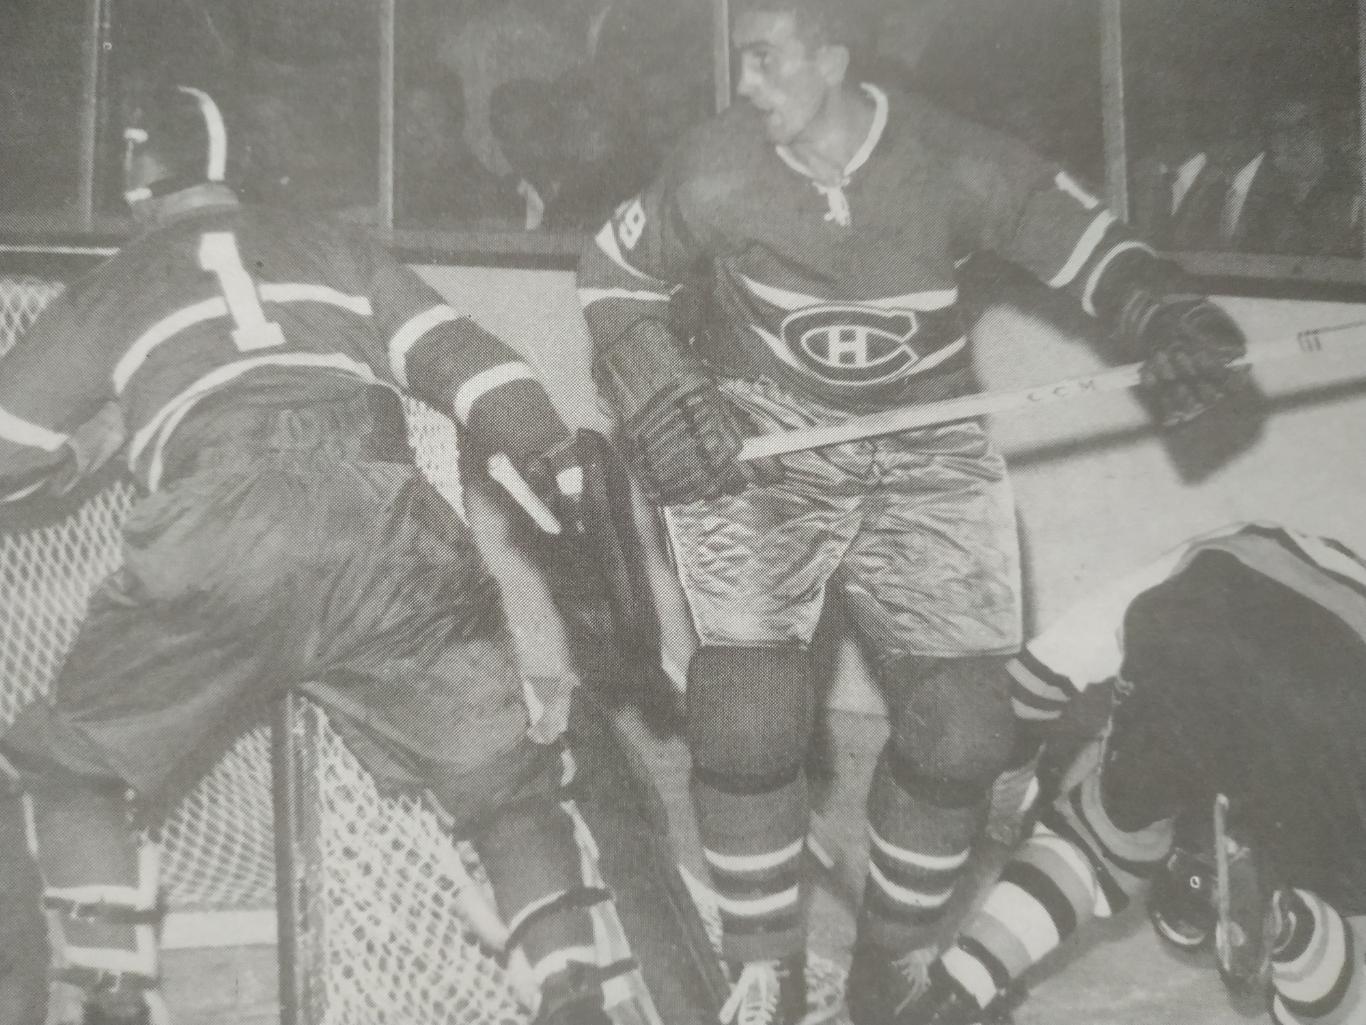 ХОККЕЙ ЖУРНАЛ ЕЖЕМЕСЯЧНИК СПОРТ РЕВЬЮ НХЛ NHL 1961 DECEMBRE SPORT REVUE 3